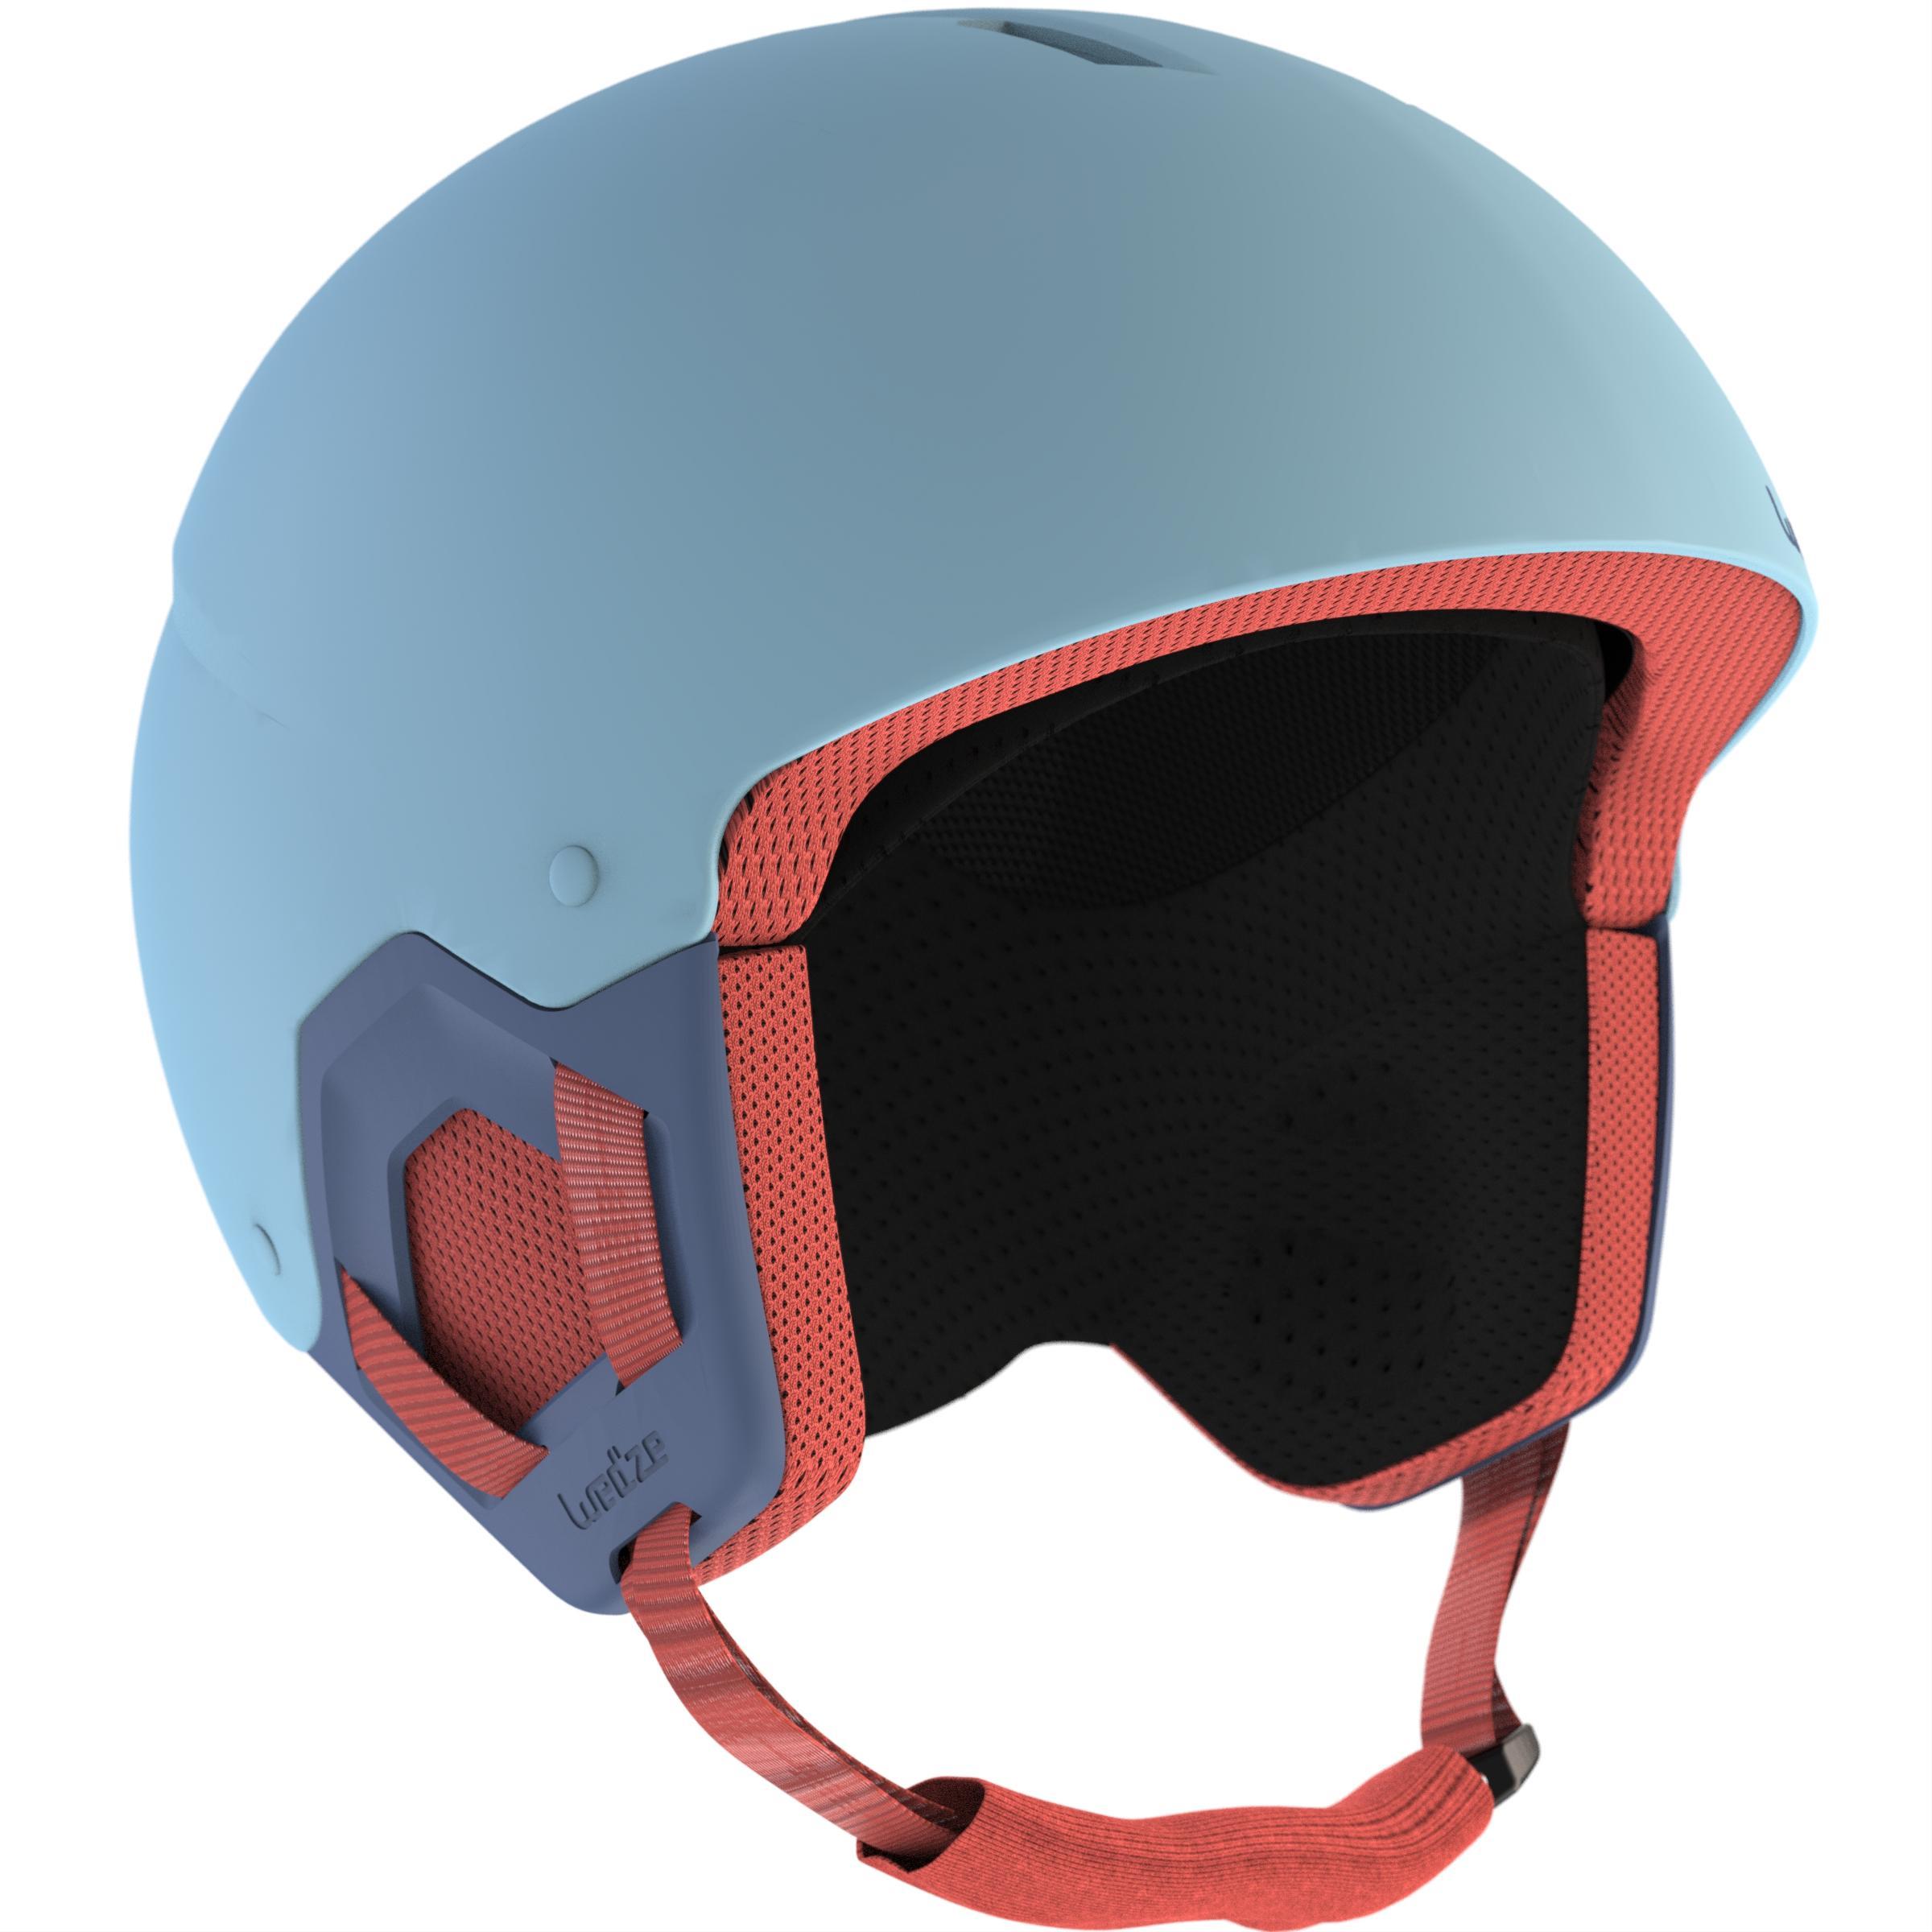 [ด่วน!! โปรโมชั่นมีจำนวนจำกัด] หมวกกันน็อคใส่เล่นสกีสำหรับเด็กรุ่น H-KD 500 (สีฟ้า) สำหรับ สกี สโนว์บอร์ด เลื่อน